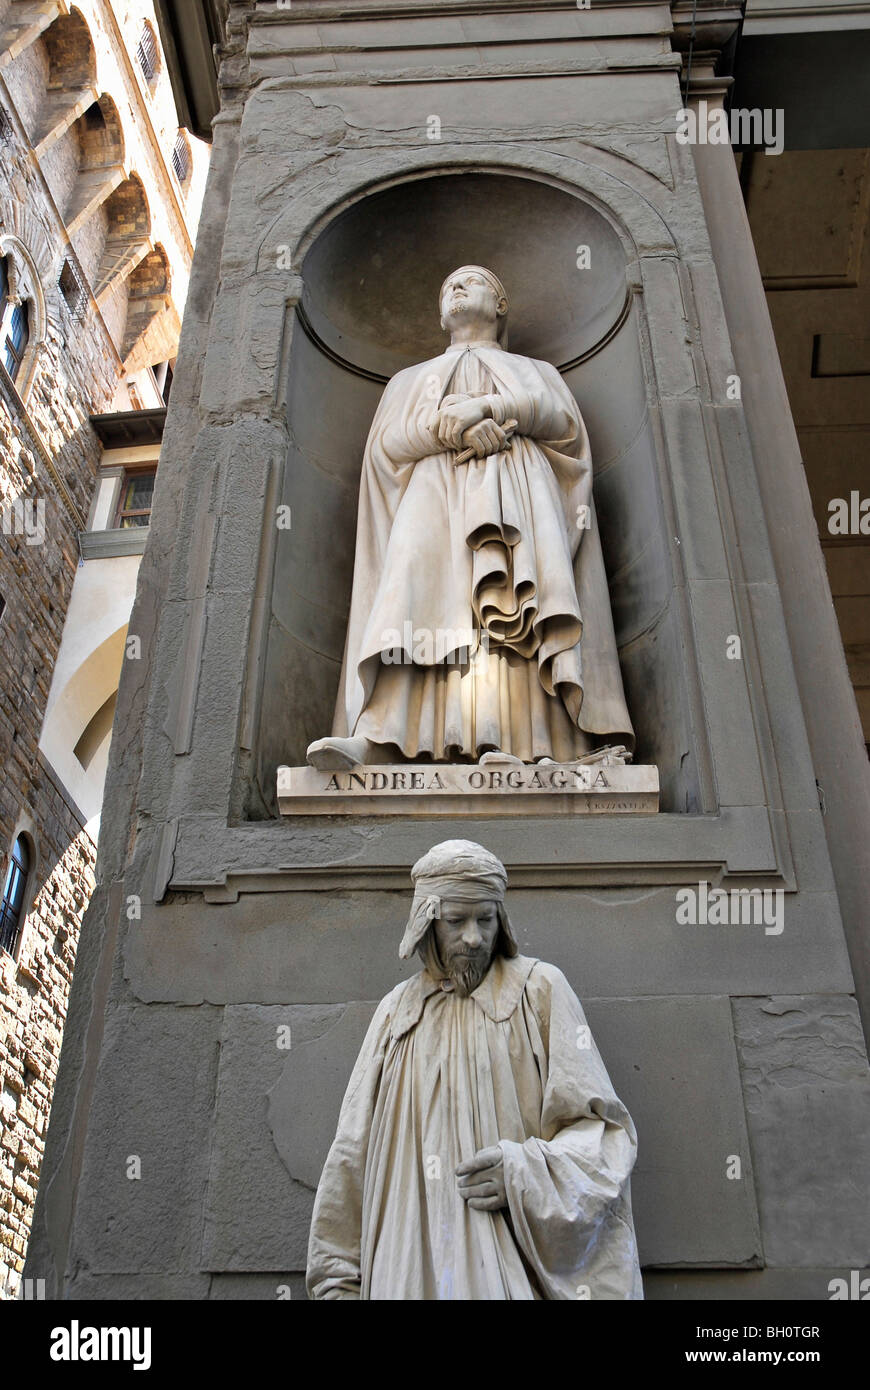 Una persona in disguise sotto una statua, Firenze, Toscana, Italia, Europa Foto Stock